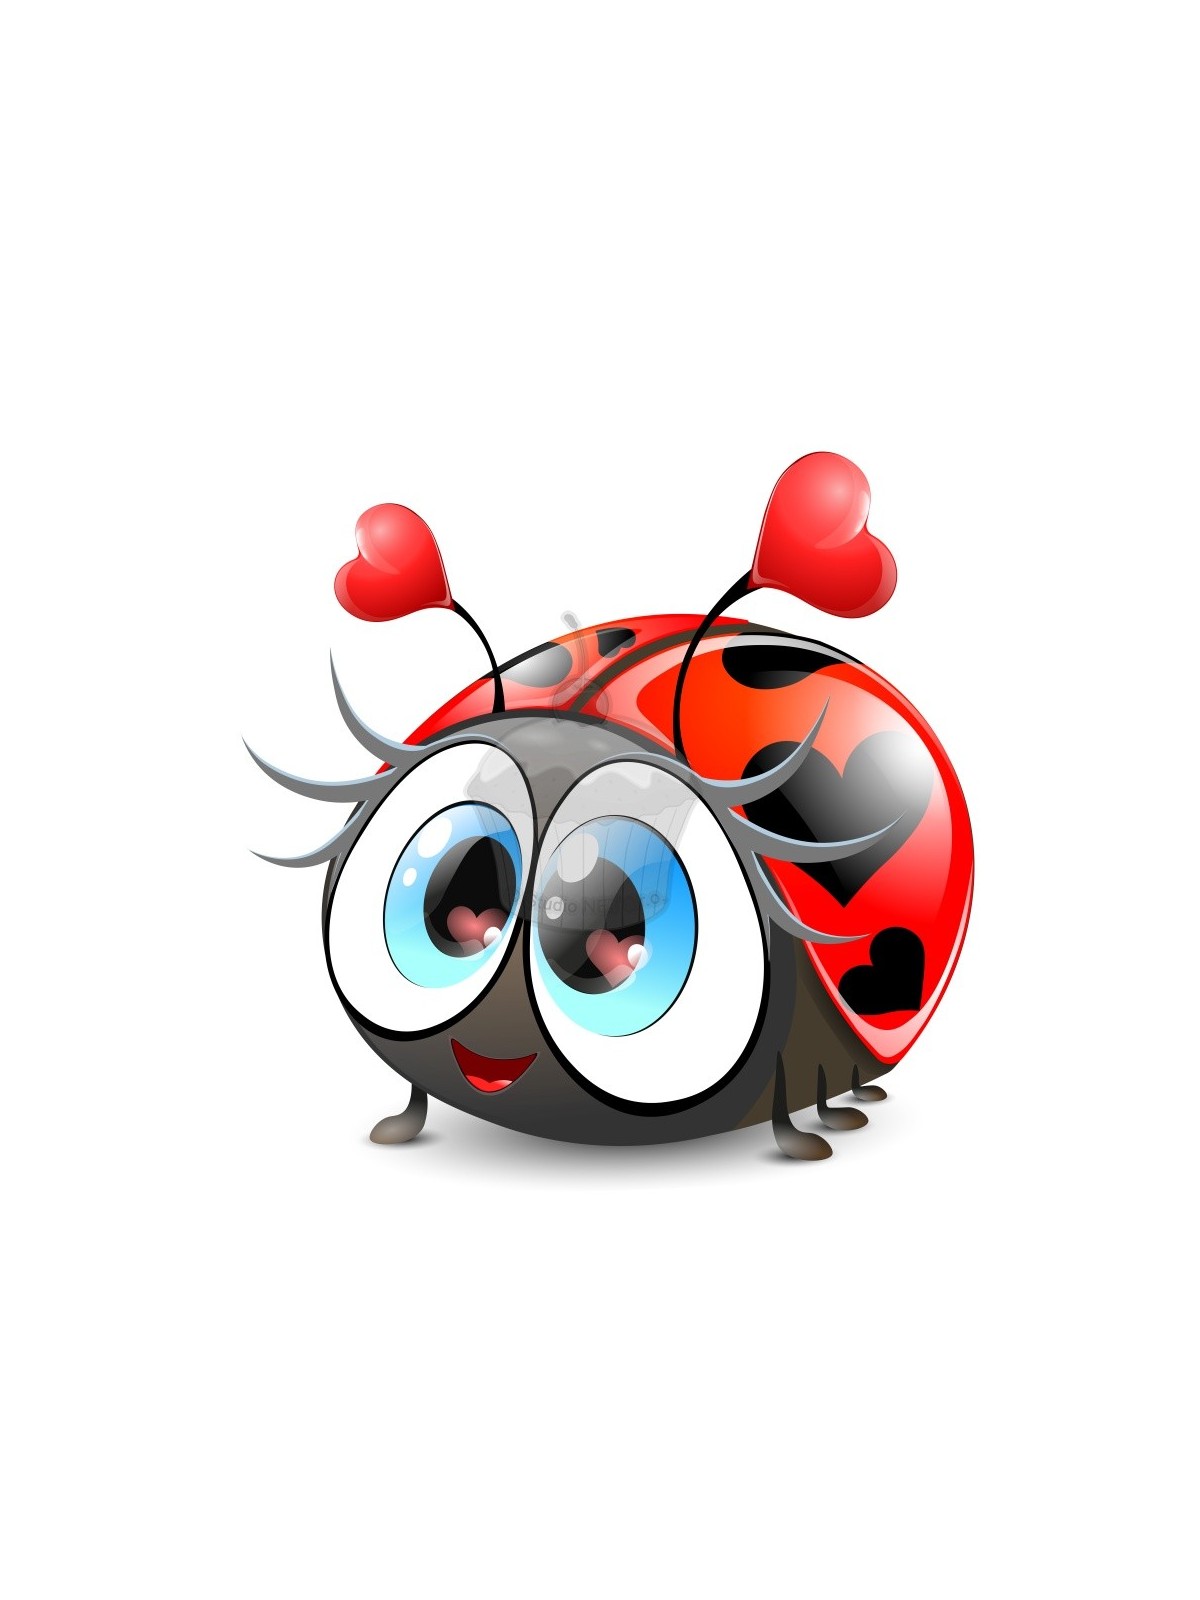 Edible paper "heart ladybug" - A4